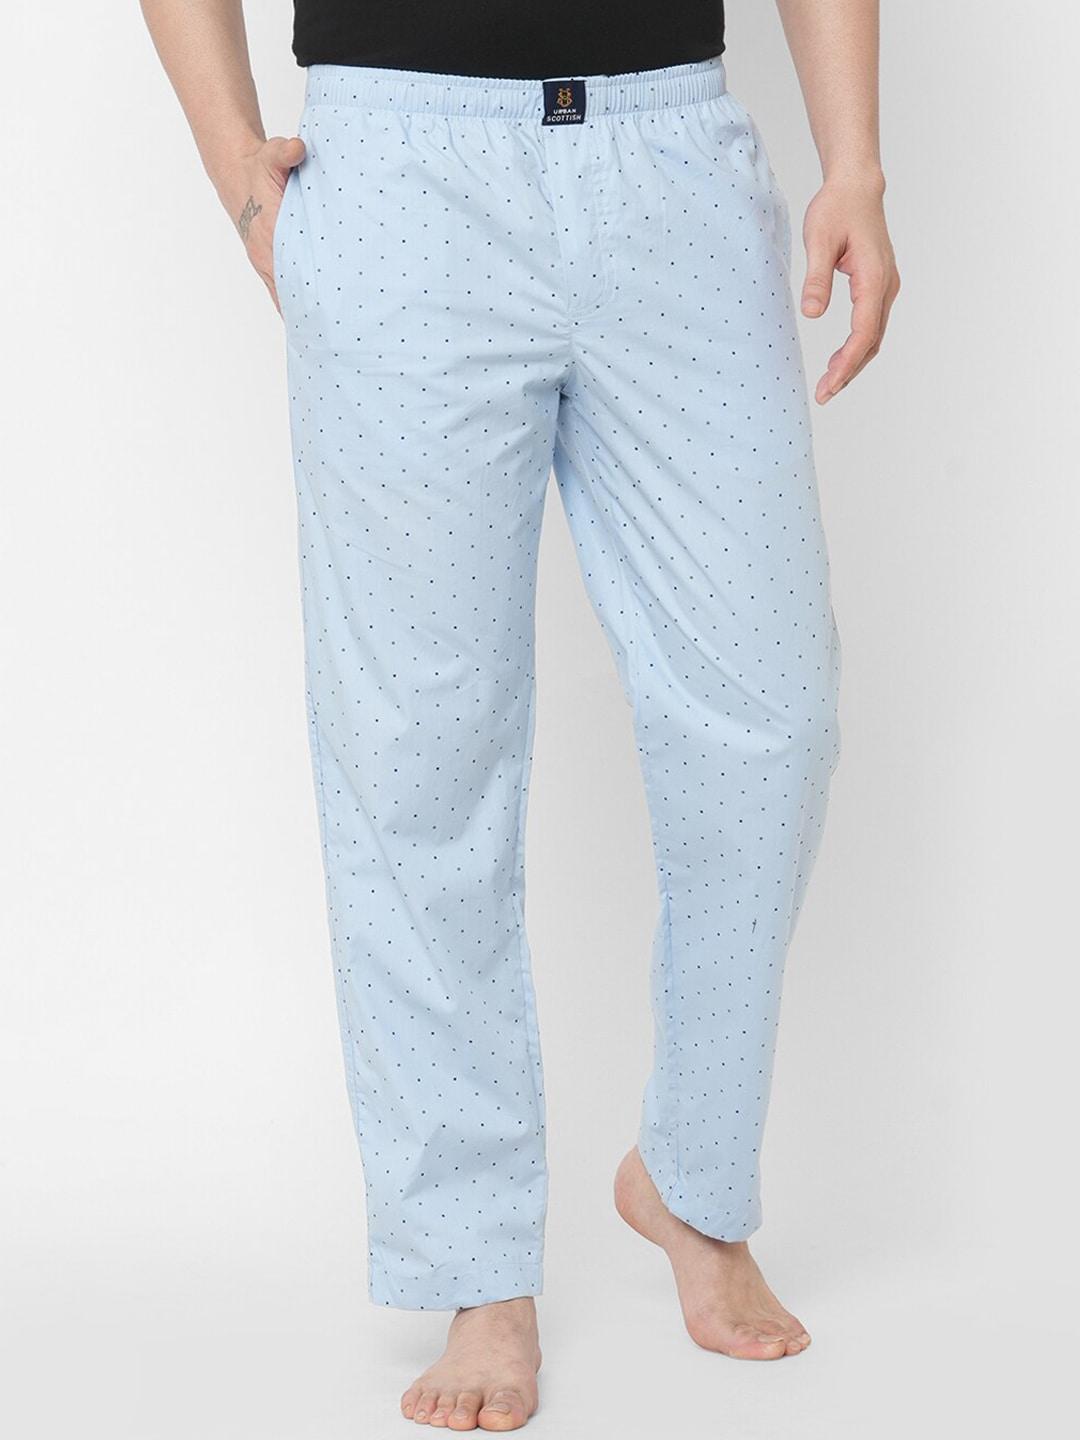 urban scottish men blue printed cotton lounge pants